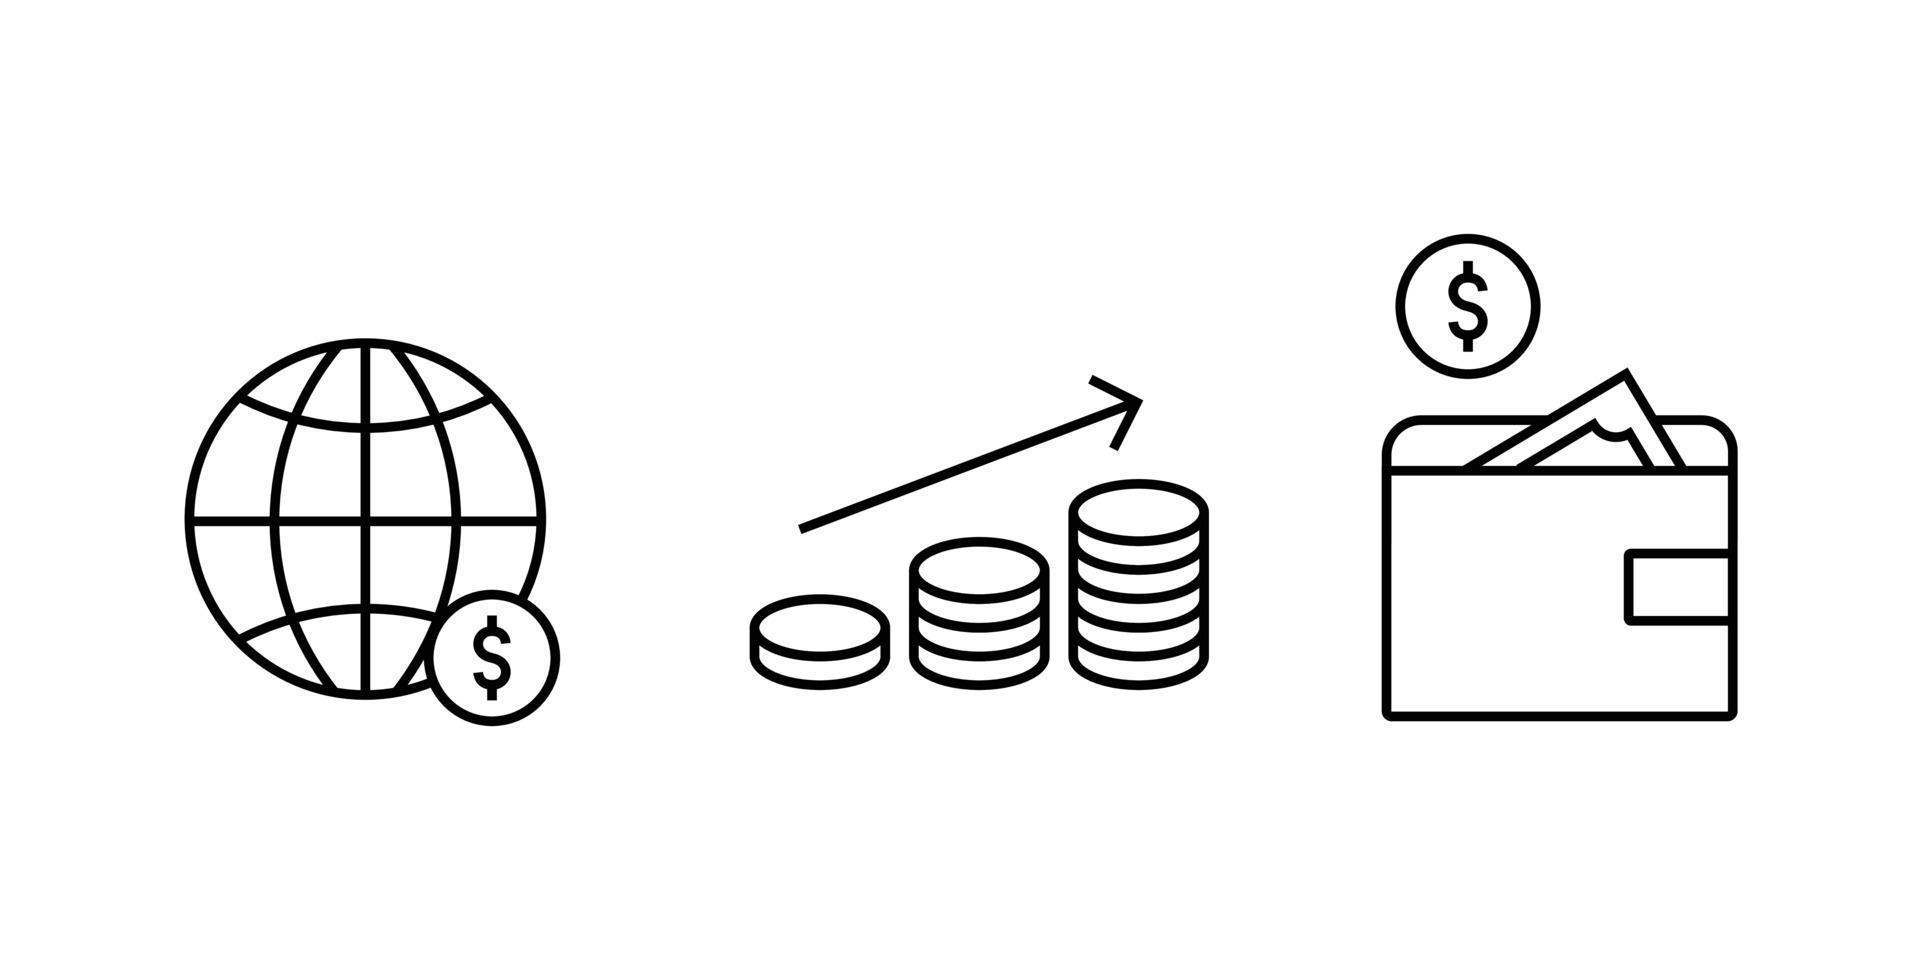 set di illustrazione creativa dell'icona modificabile relativa a cose finanziarie. crescita economica. tratto vettoriale dell'elemento adatto per la progettazione dell'interfaccia utente di applicazioni finanziarie o economiche.